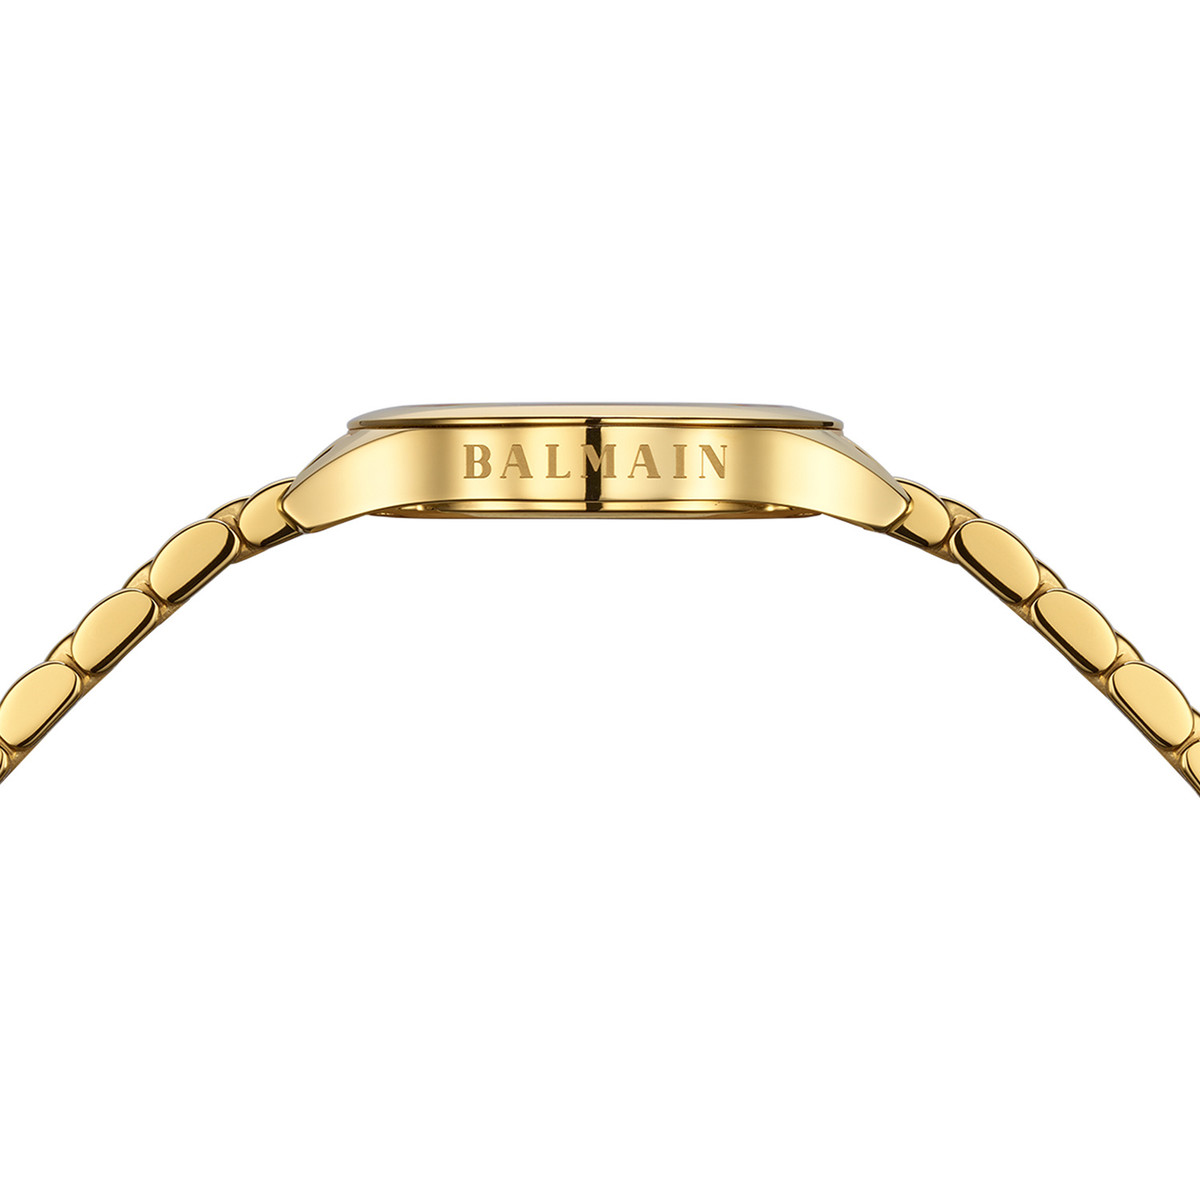 Montre BALMAIN tradition femme bracelet acier inoxydable or - vue 4